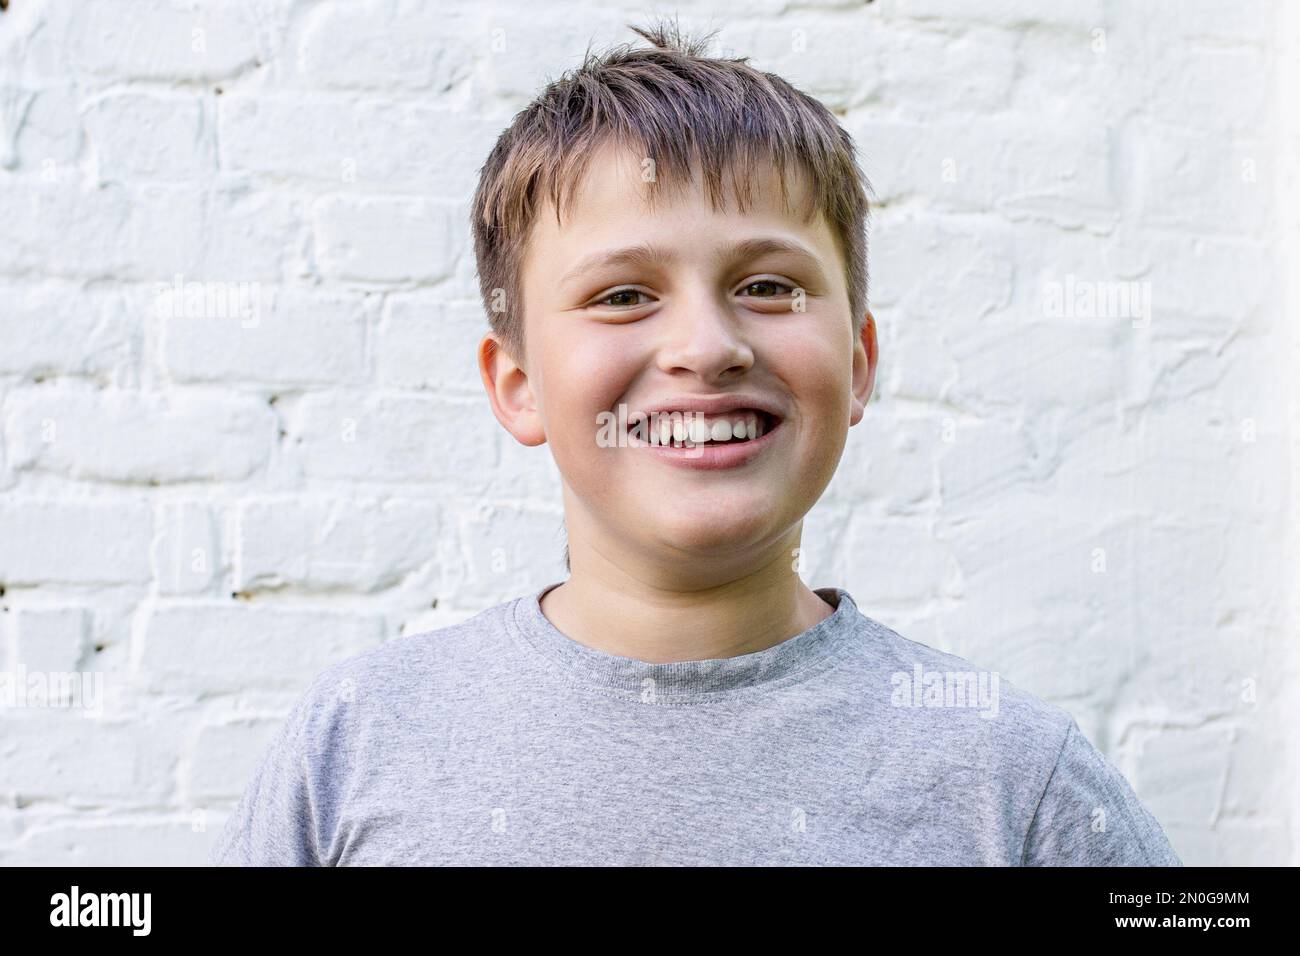 le garçon sourit avec joie. Portrait d'un incroyable petit garçon sympathique. beau adolescent près d'un mur de briques blanches Banque D'Images